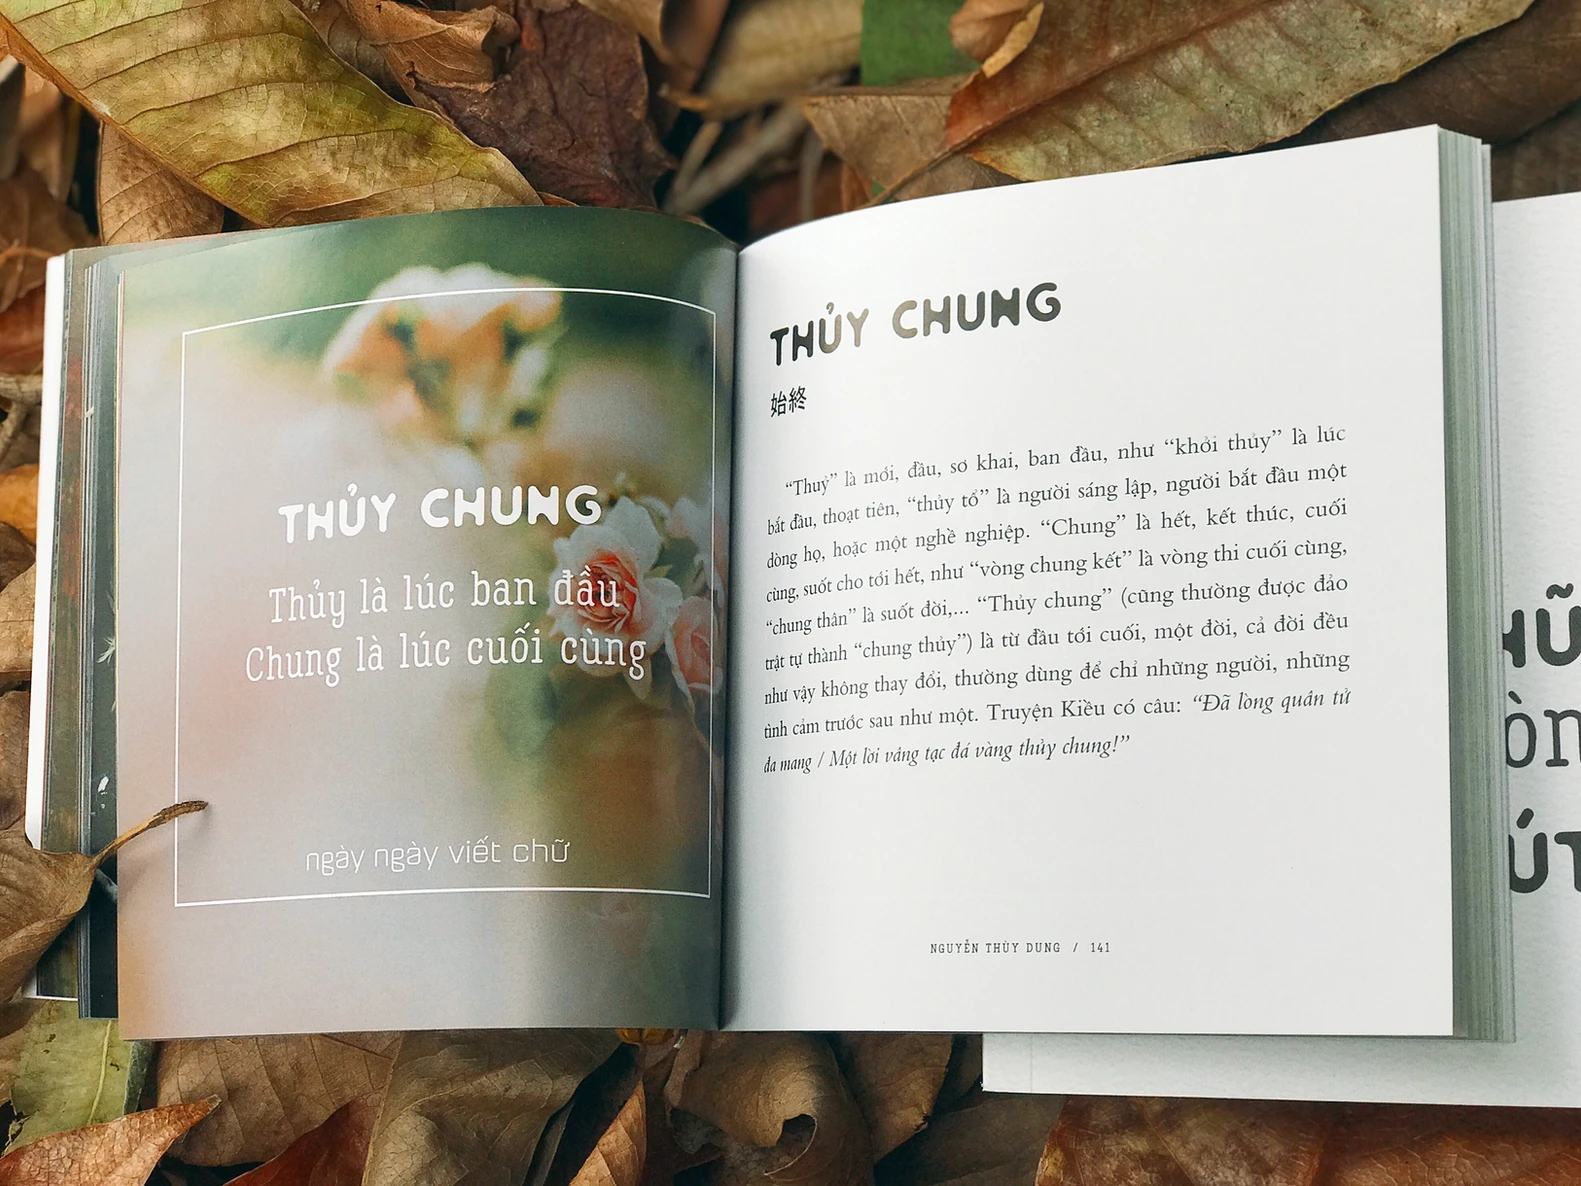 Trang sách về từ "thủy chung" thuộc cuốn "Chữ xưa còn một chút này" của chị Nguyễn Thùy Dung. (Ảnh: NVCC)